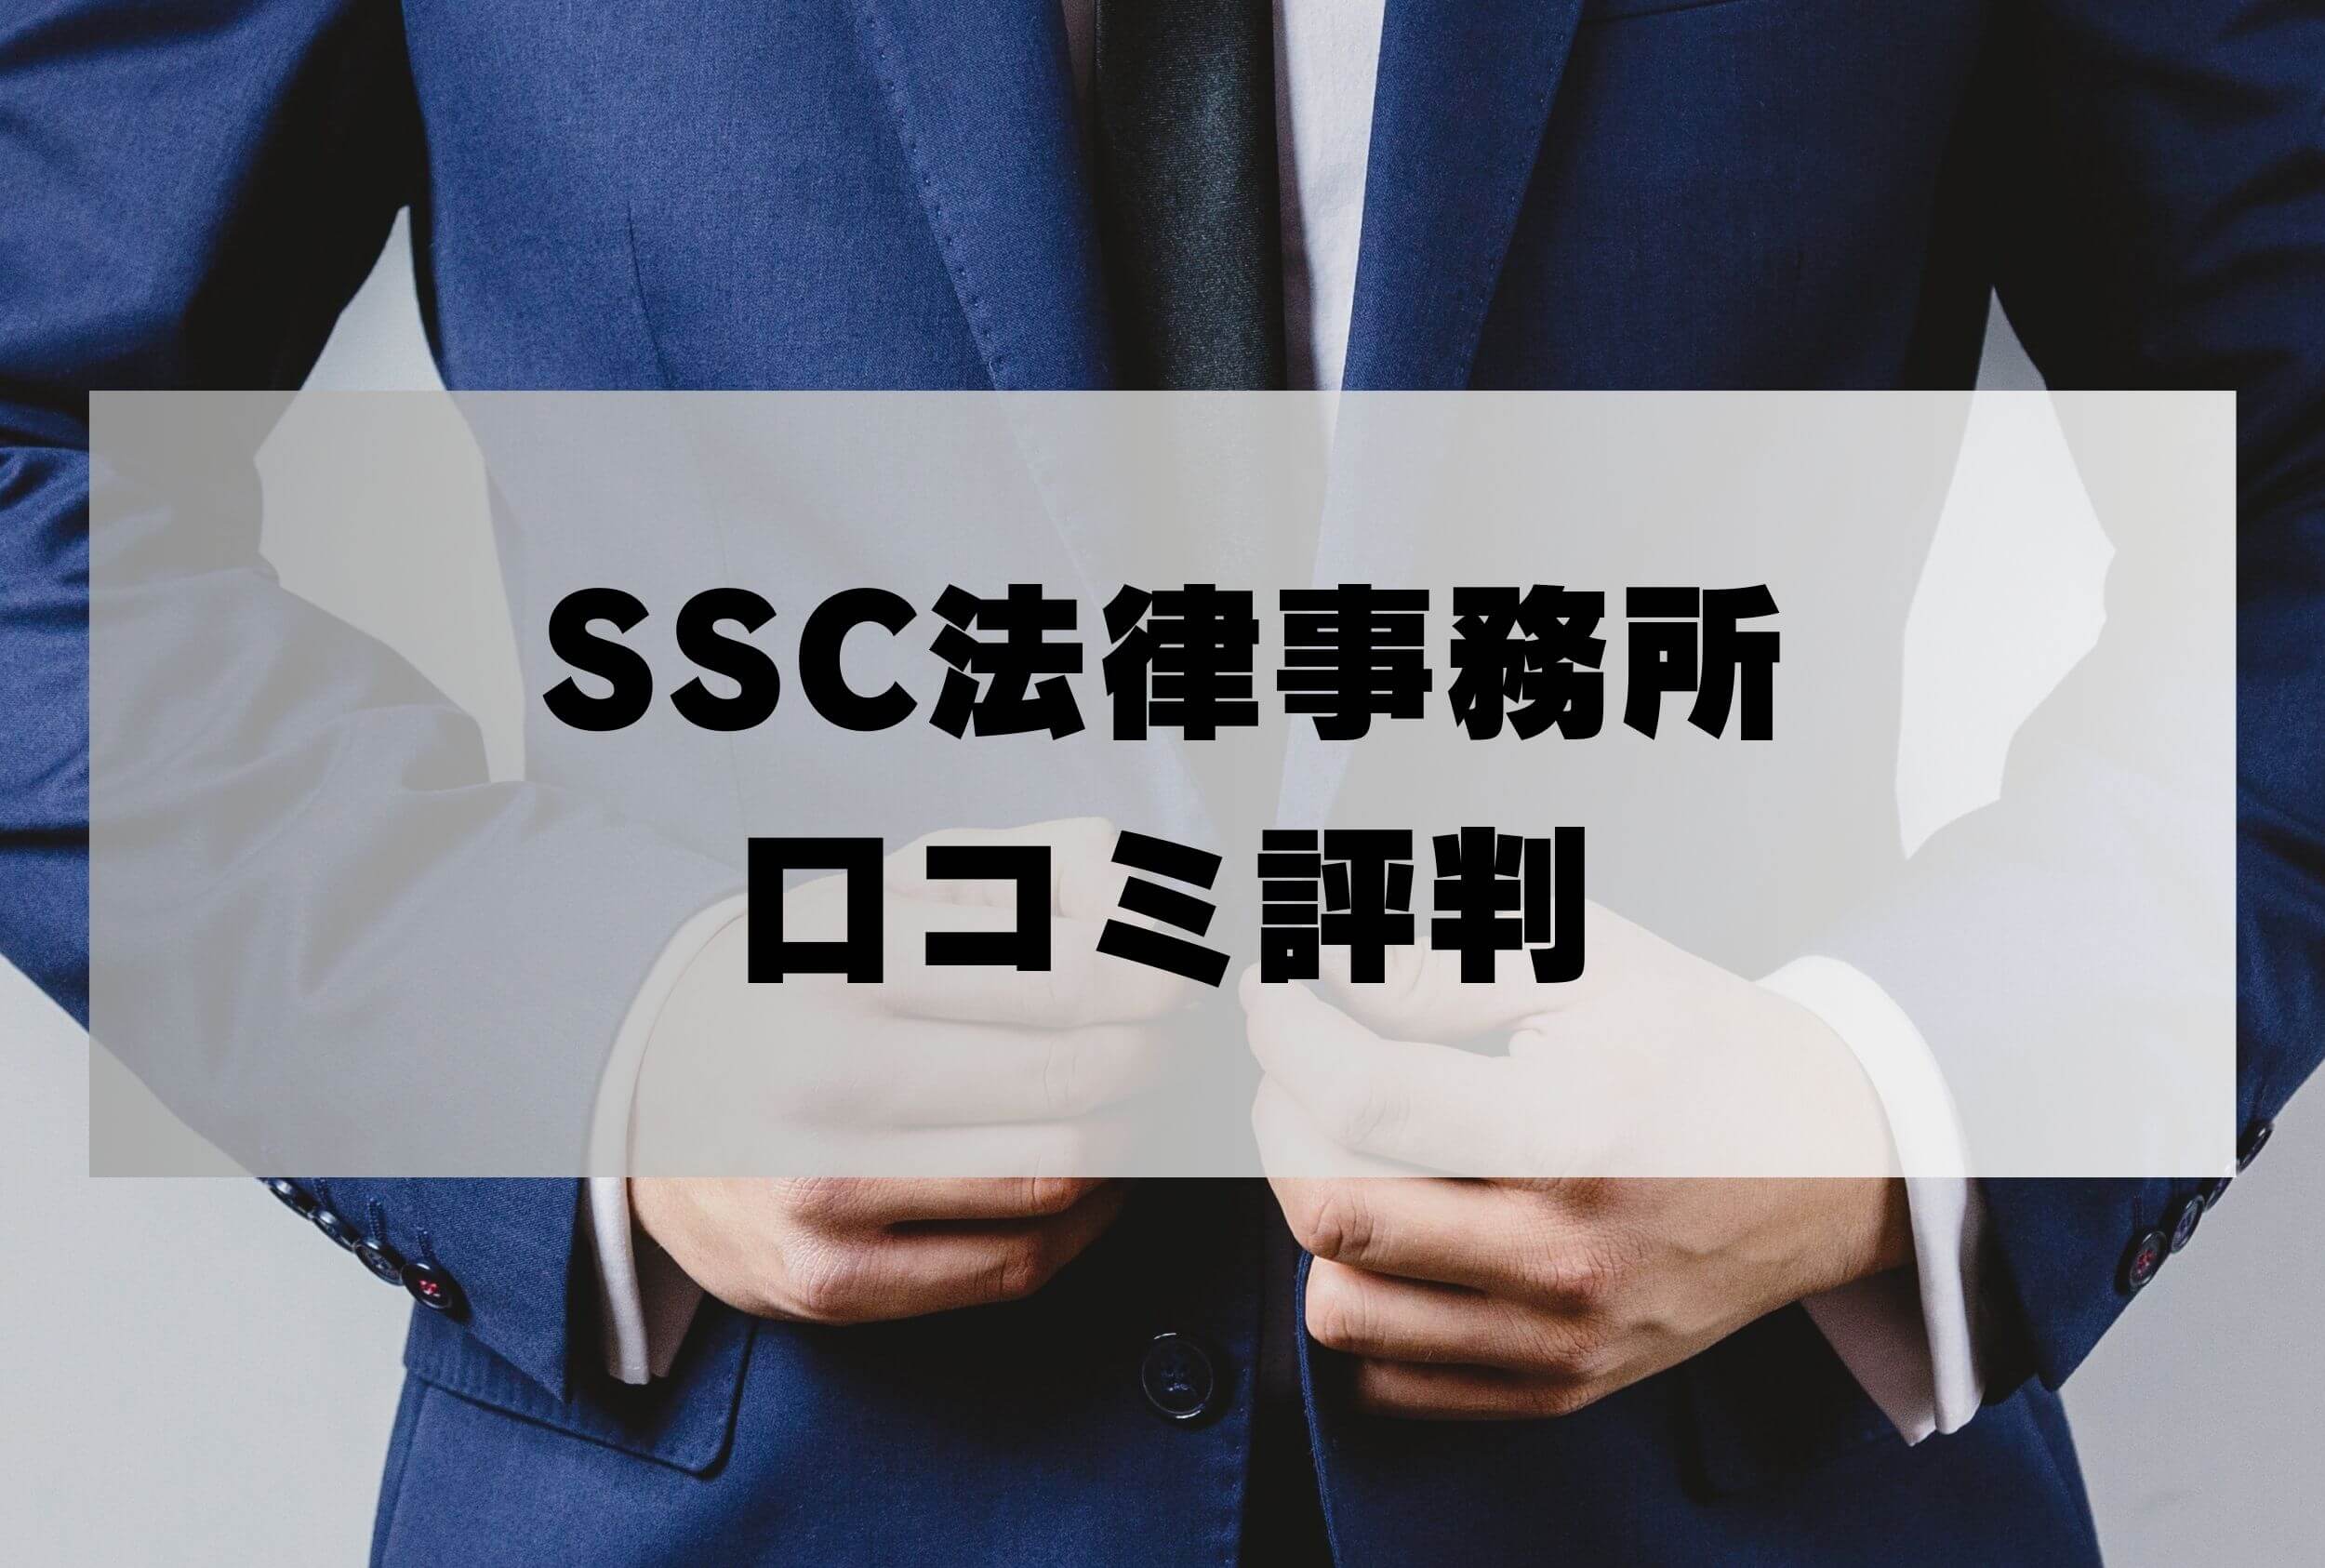 SSC法律事務所 評判 口コミ